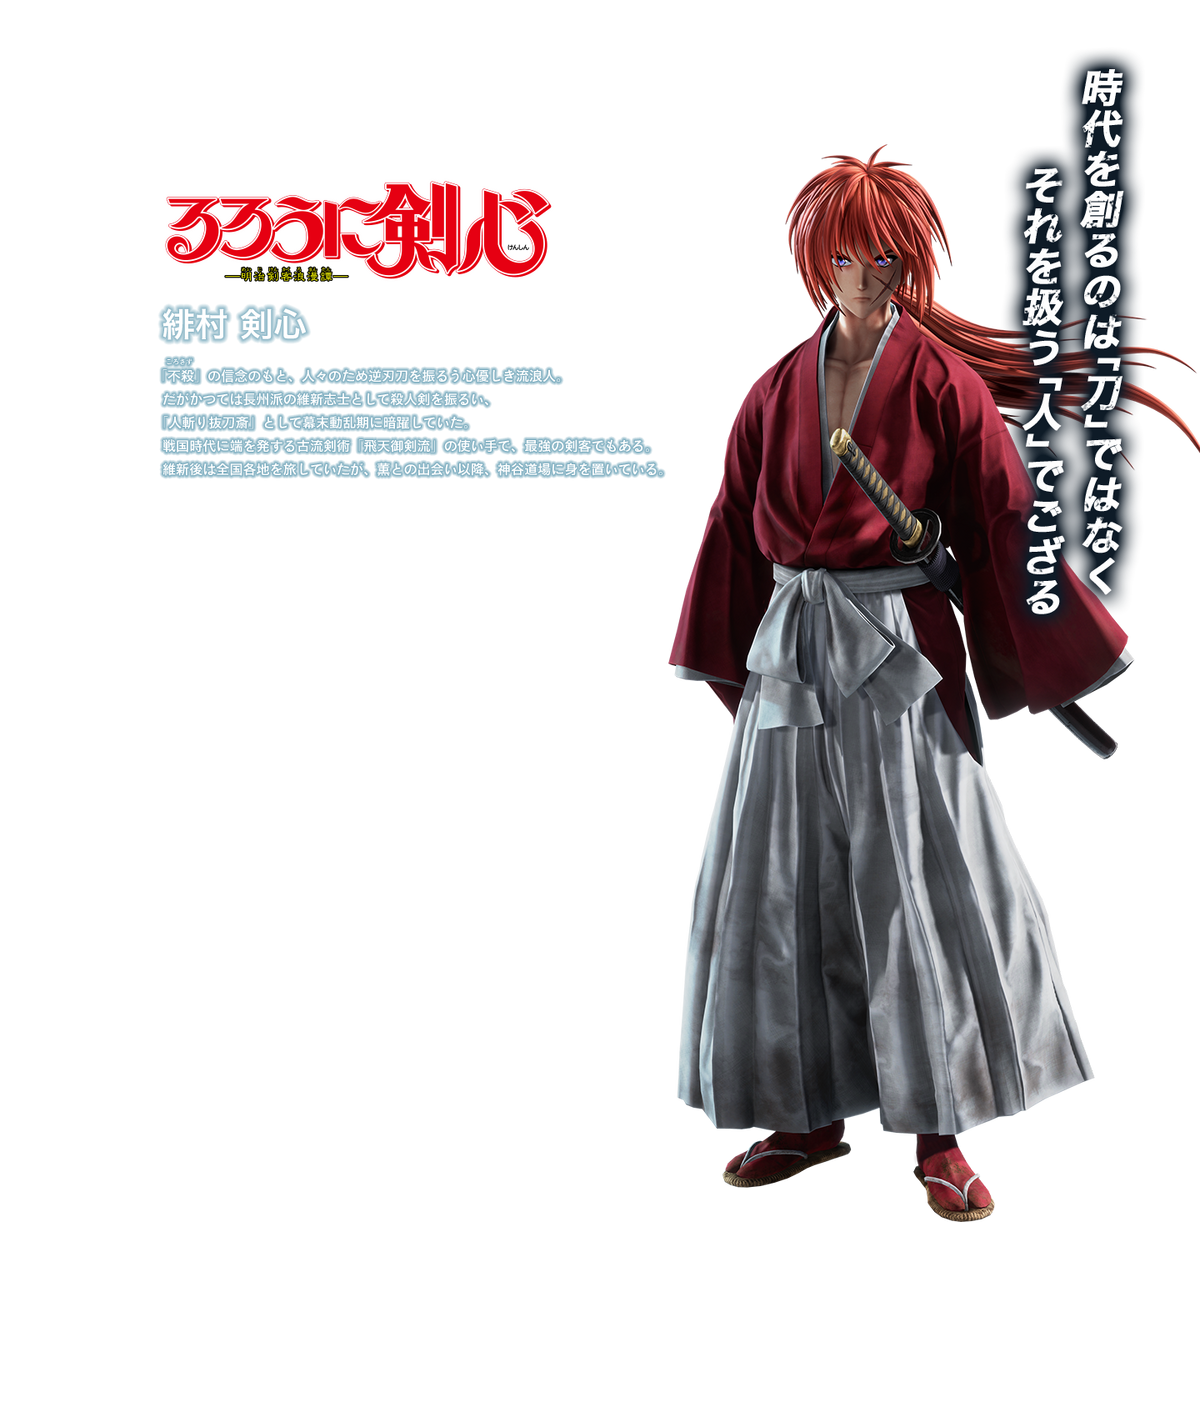 Kenshin Himura, Jump Force Wiki